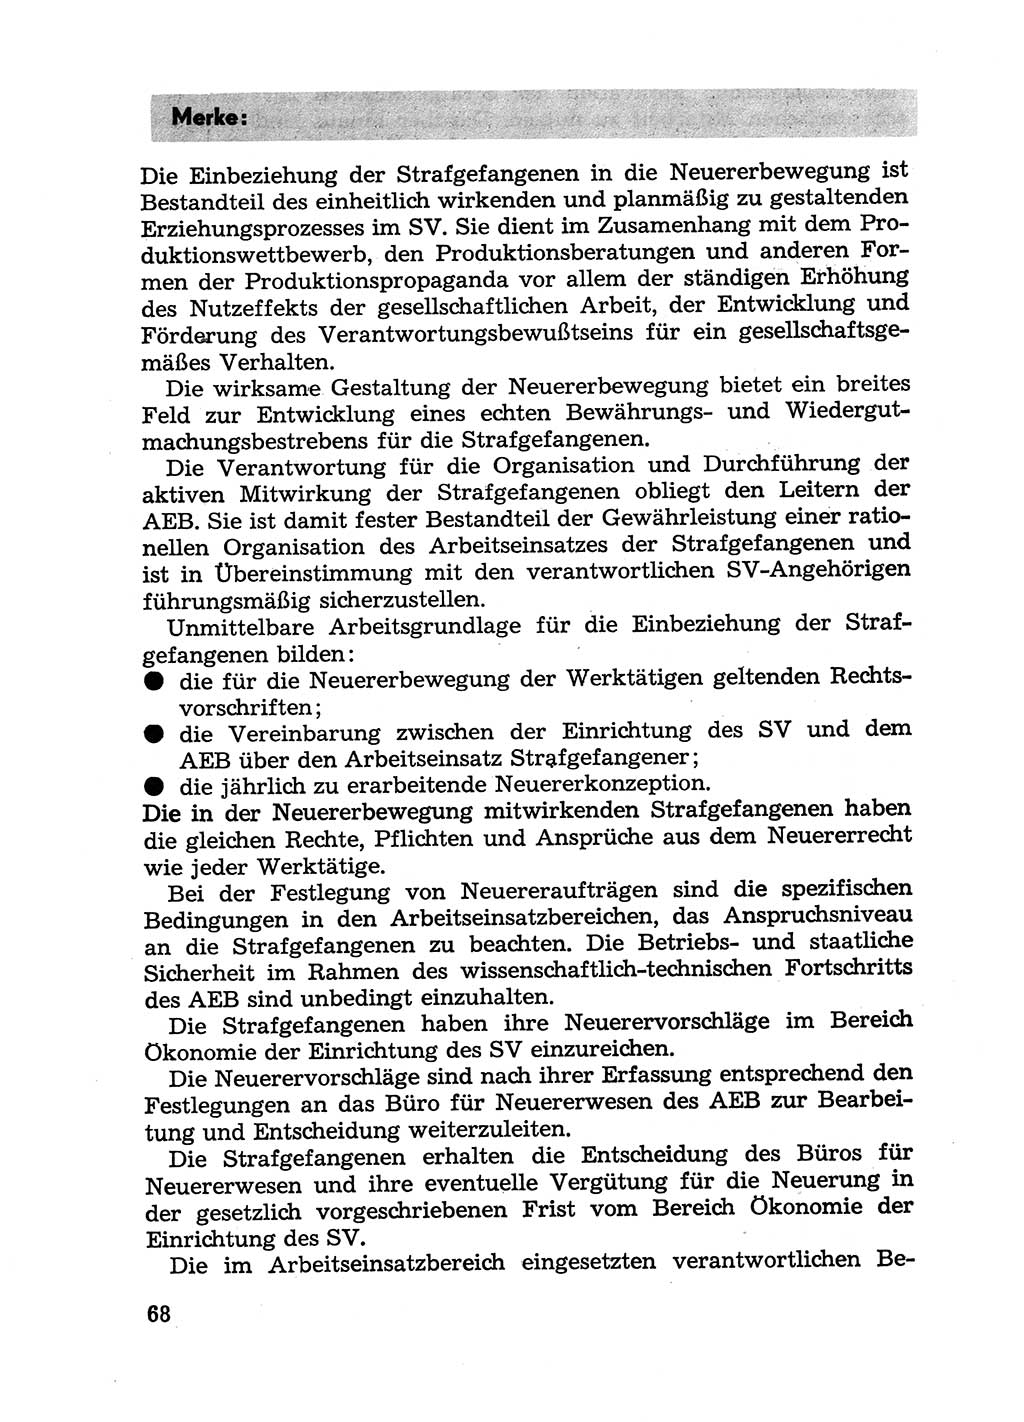 Handbuch für Betriebsangehörige, Abteilung Strafvollzug (SV) [Ministerium des Innern (MdI) Deutsche Demokratische Republik (DDR)] 1981, Seite 68 (Hb. BA Abt. SV MdI DDR 1981, S. 68)